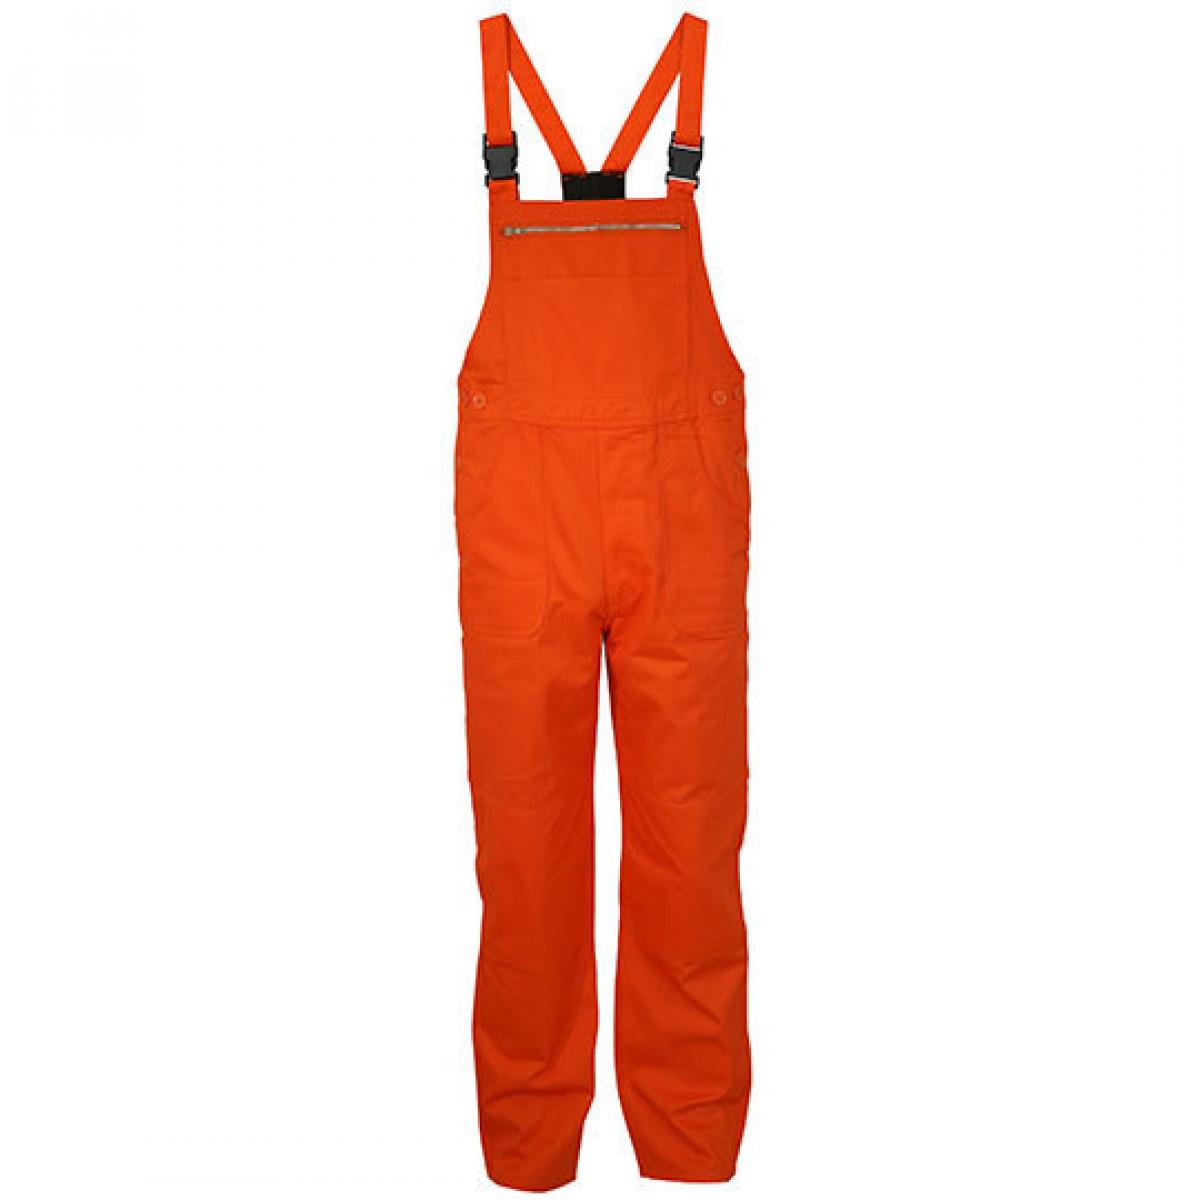 Hersteller: Carson Classic Workwear Herstellernummer: KTH726 Artikelbezeichnung: Herren Classic Bib Pants Latzhose / Bei 60 Grad waschbar Farbe: Orange